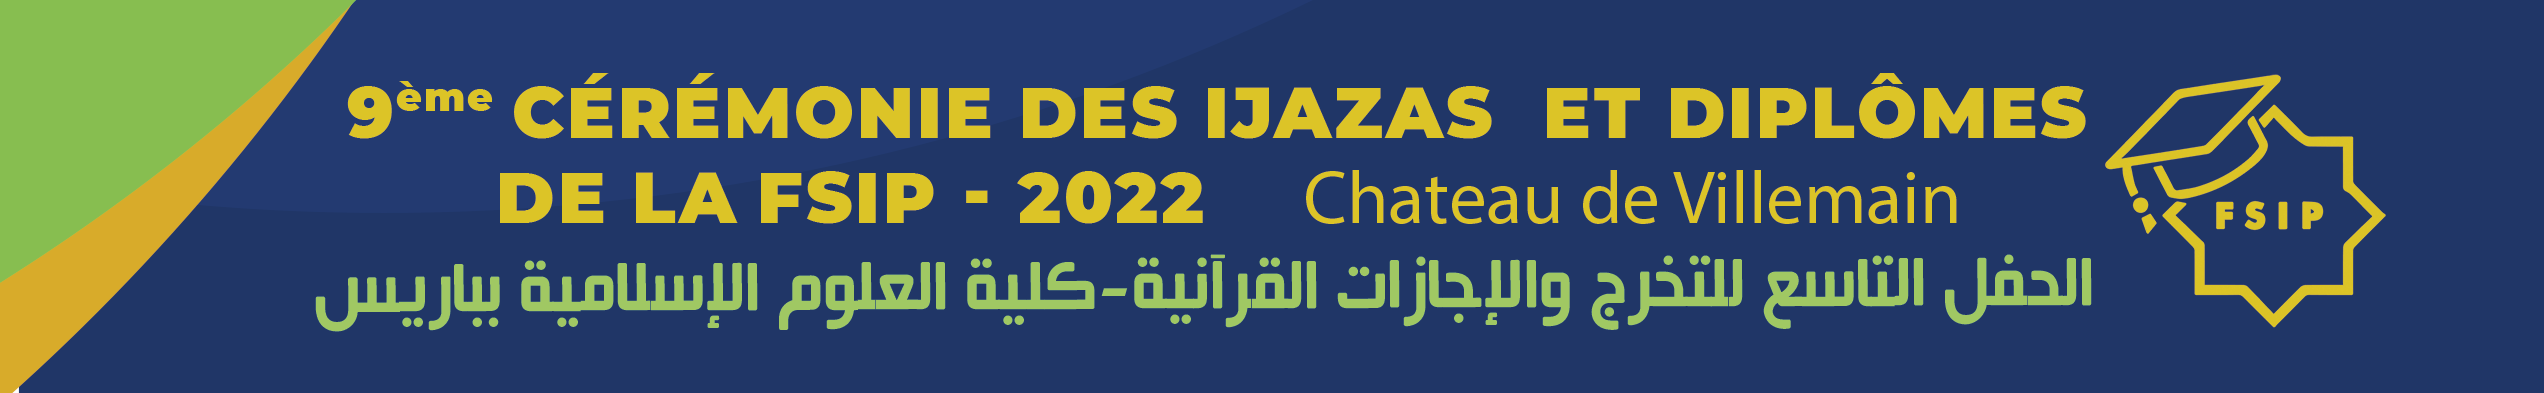 invitation fête cérémonie ijaza diplômes cours coran arabe sciences islamiques FSIP Paris 2022